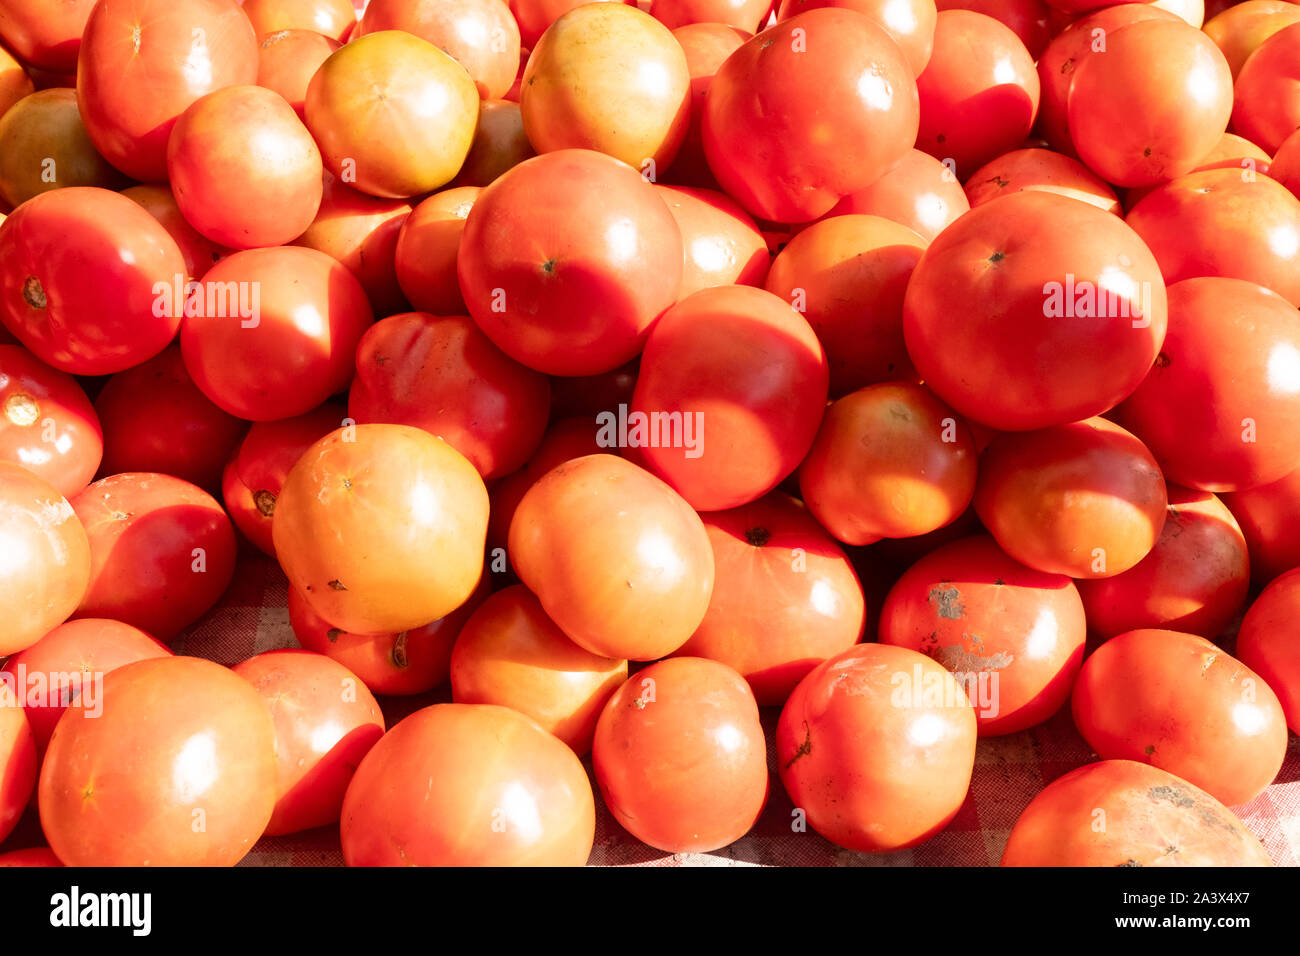 Abbondante gruppo di pomodori rossi in ombra e al sole, accatastati presso un'azienda agricola locale. Alcuni maturi, alcuni imperfezioni, tutto il frutto sano e sano o vegetale Foto Stock